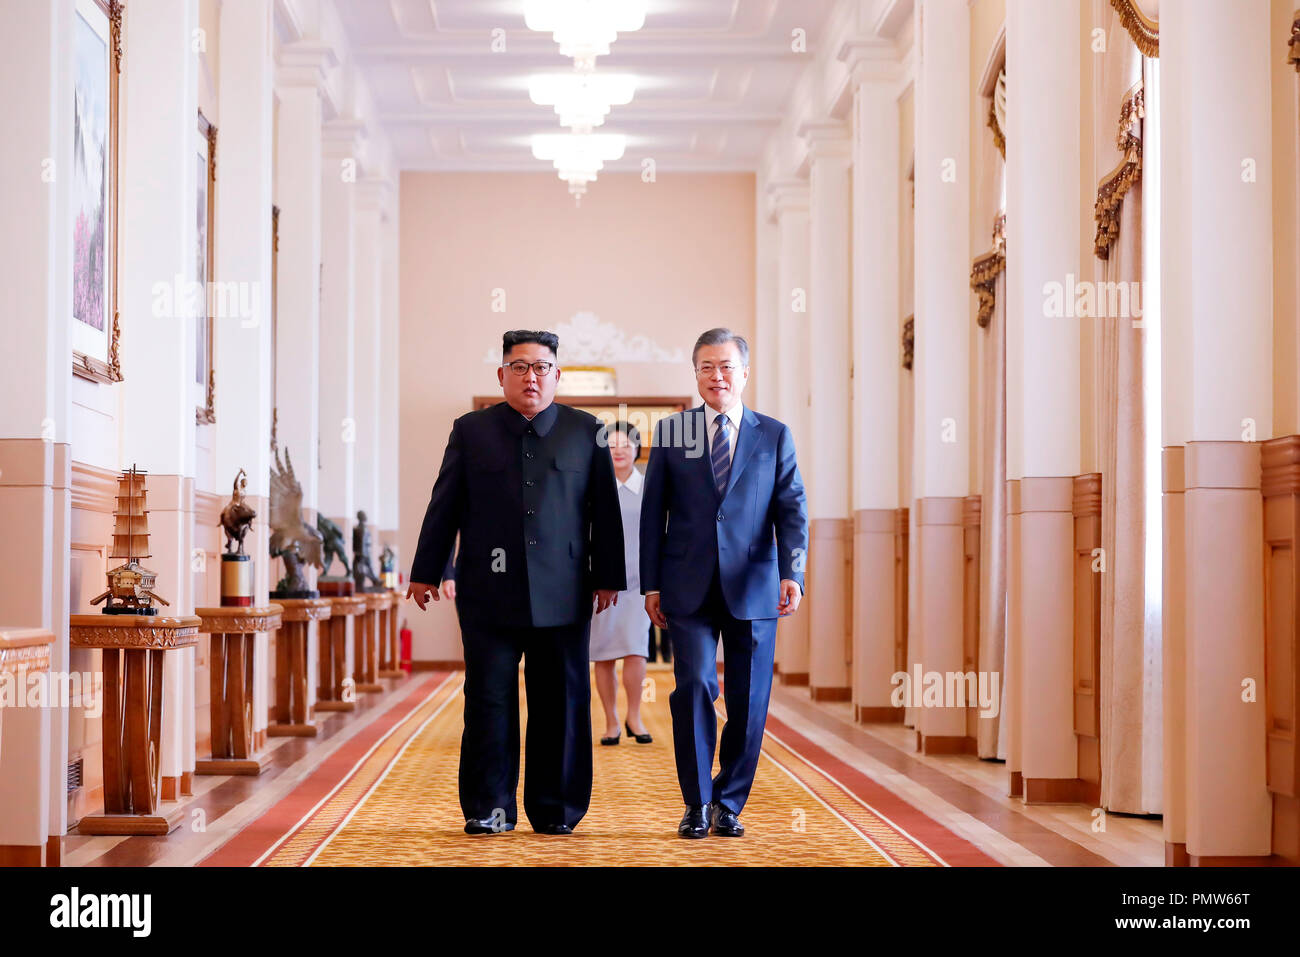 Innerkoreanischen Gipfeltreffen, 19.09.2018: die nordkoreanischen Führer Kim Jong-Un und südkoreanischen Präsidenten Mond Jae-In sprechen wie Sie ankommen ein Gipfel, bei dem Paekhwawon State Guest House in Pyongyang, Nordkorea zu halten. Nordkoreanischen Führer Kim vereinbart, dauerhaft große Rakete Triebwerksprüfstände und eine Startrampe in der Nähe der Grenze zu China demontieren. Die beiden koreanischen Staaten vereinbarten grenzüberschreitenden Austausch und arbeiten zusammen, um für eine ausgewogene wirtschaftliche Entwicklung auf der Koreanischen Halbinsel zu intensivieren und sich für ein gemeinsames Projekt der Eisenbahnen und Straßen, die über ihre Landesgrenzen hinaus innerhalb dieses Jahres zu verbinden als Teil zu brechen Stockfoto